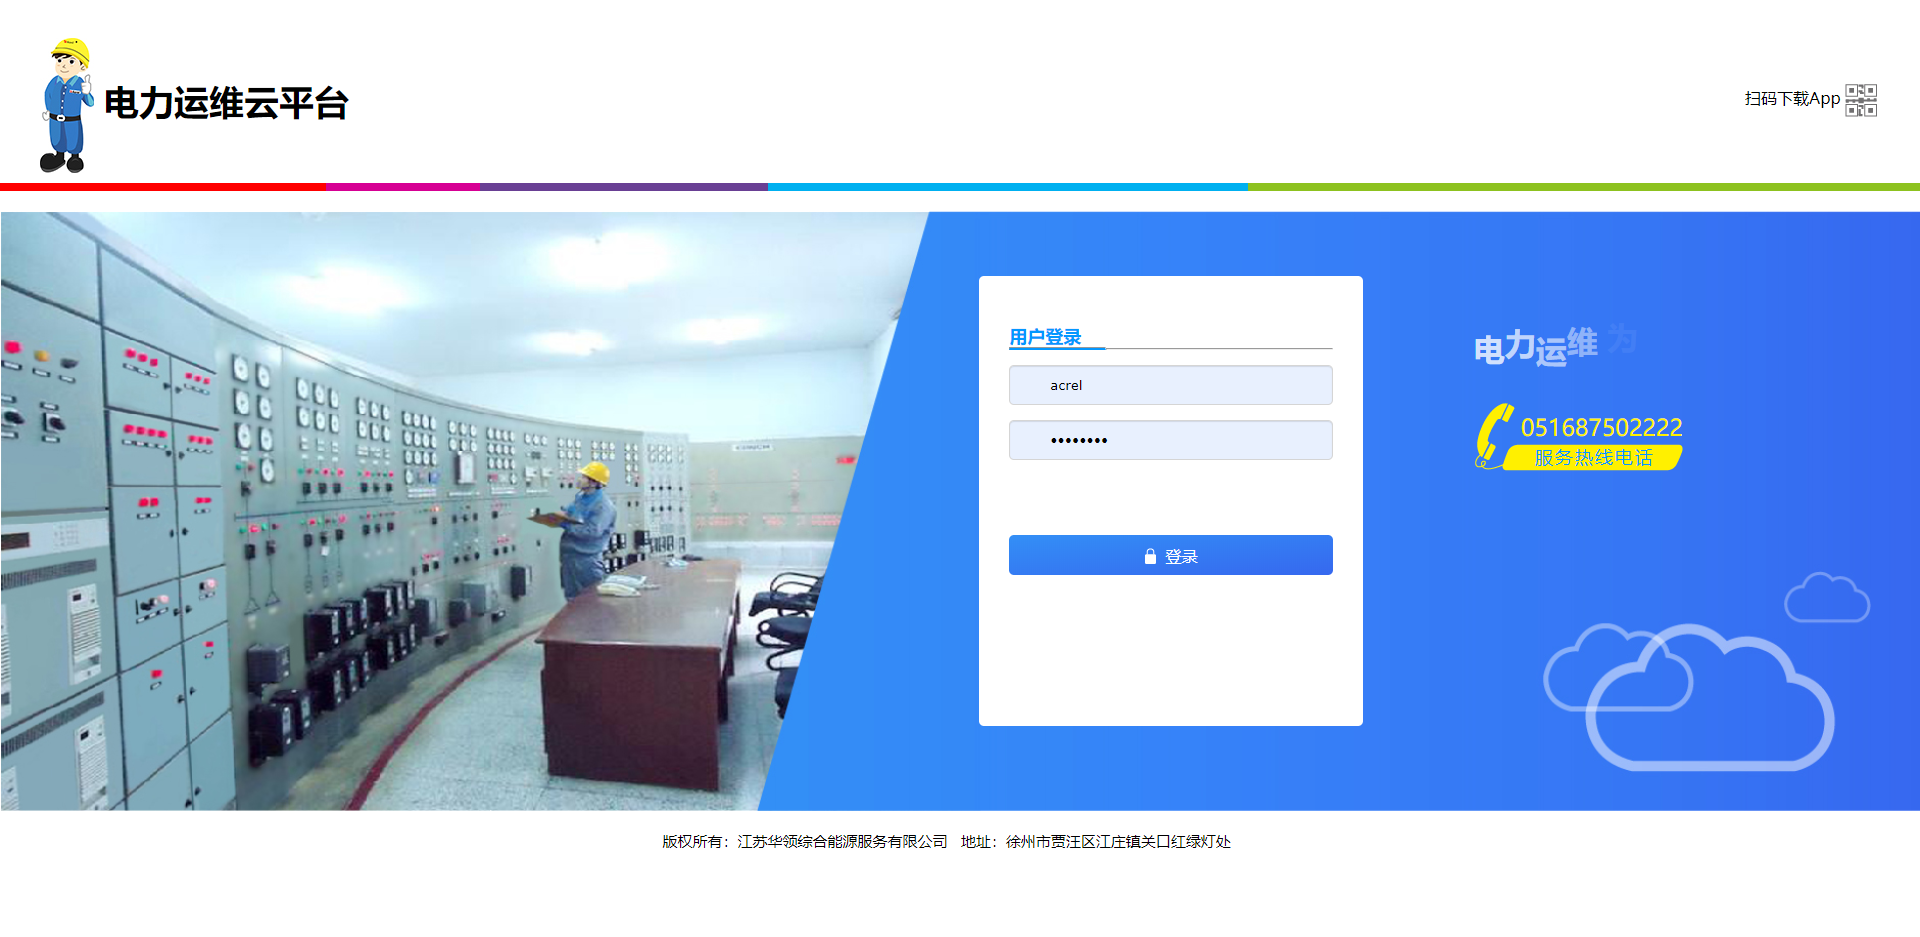 徐州市华领售电有限公司变电所运维云平台的设计与应用